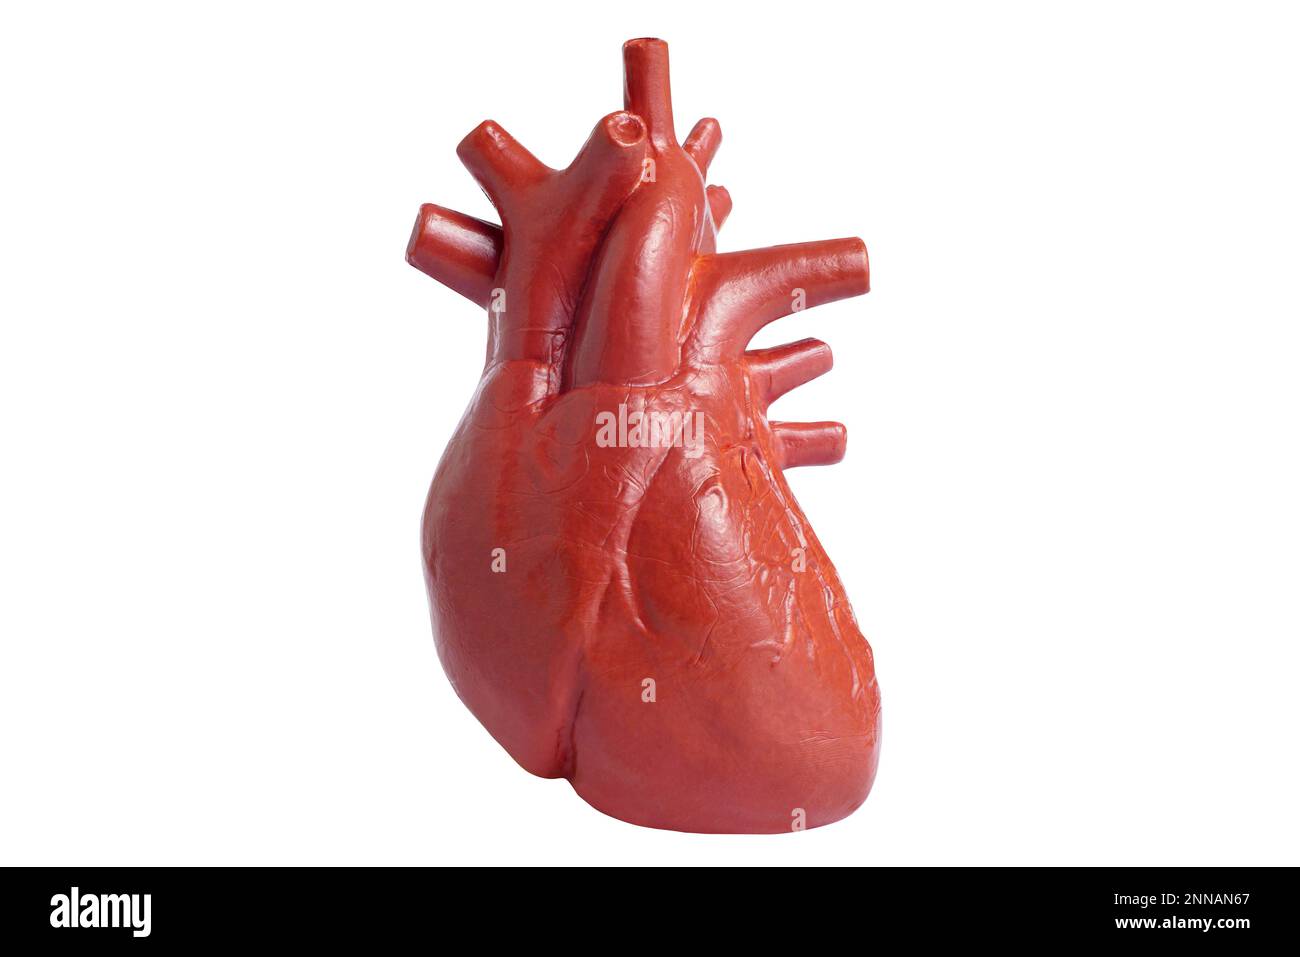 Modello del cuore umano isolato su sfondo bianco. Organo interno giocattolo per imparare l'anatomia. Foto Stock